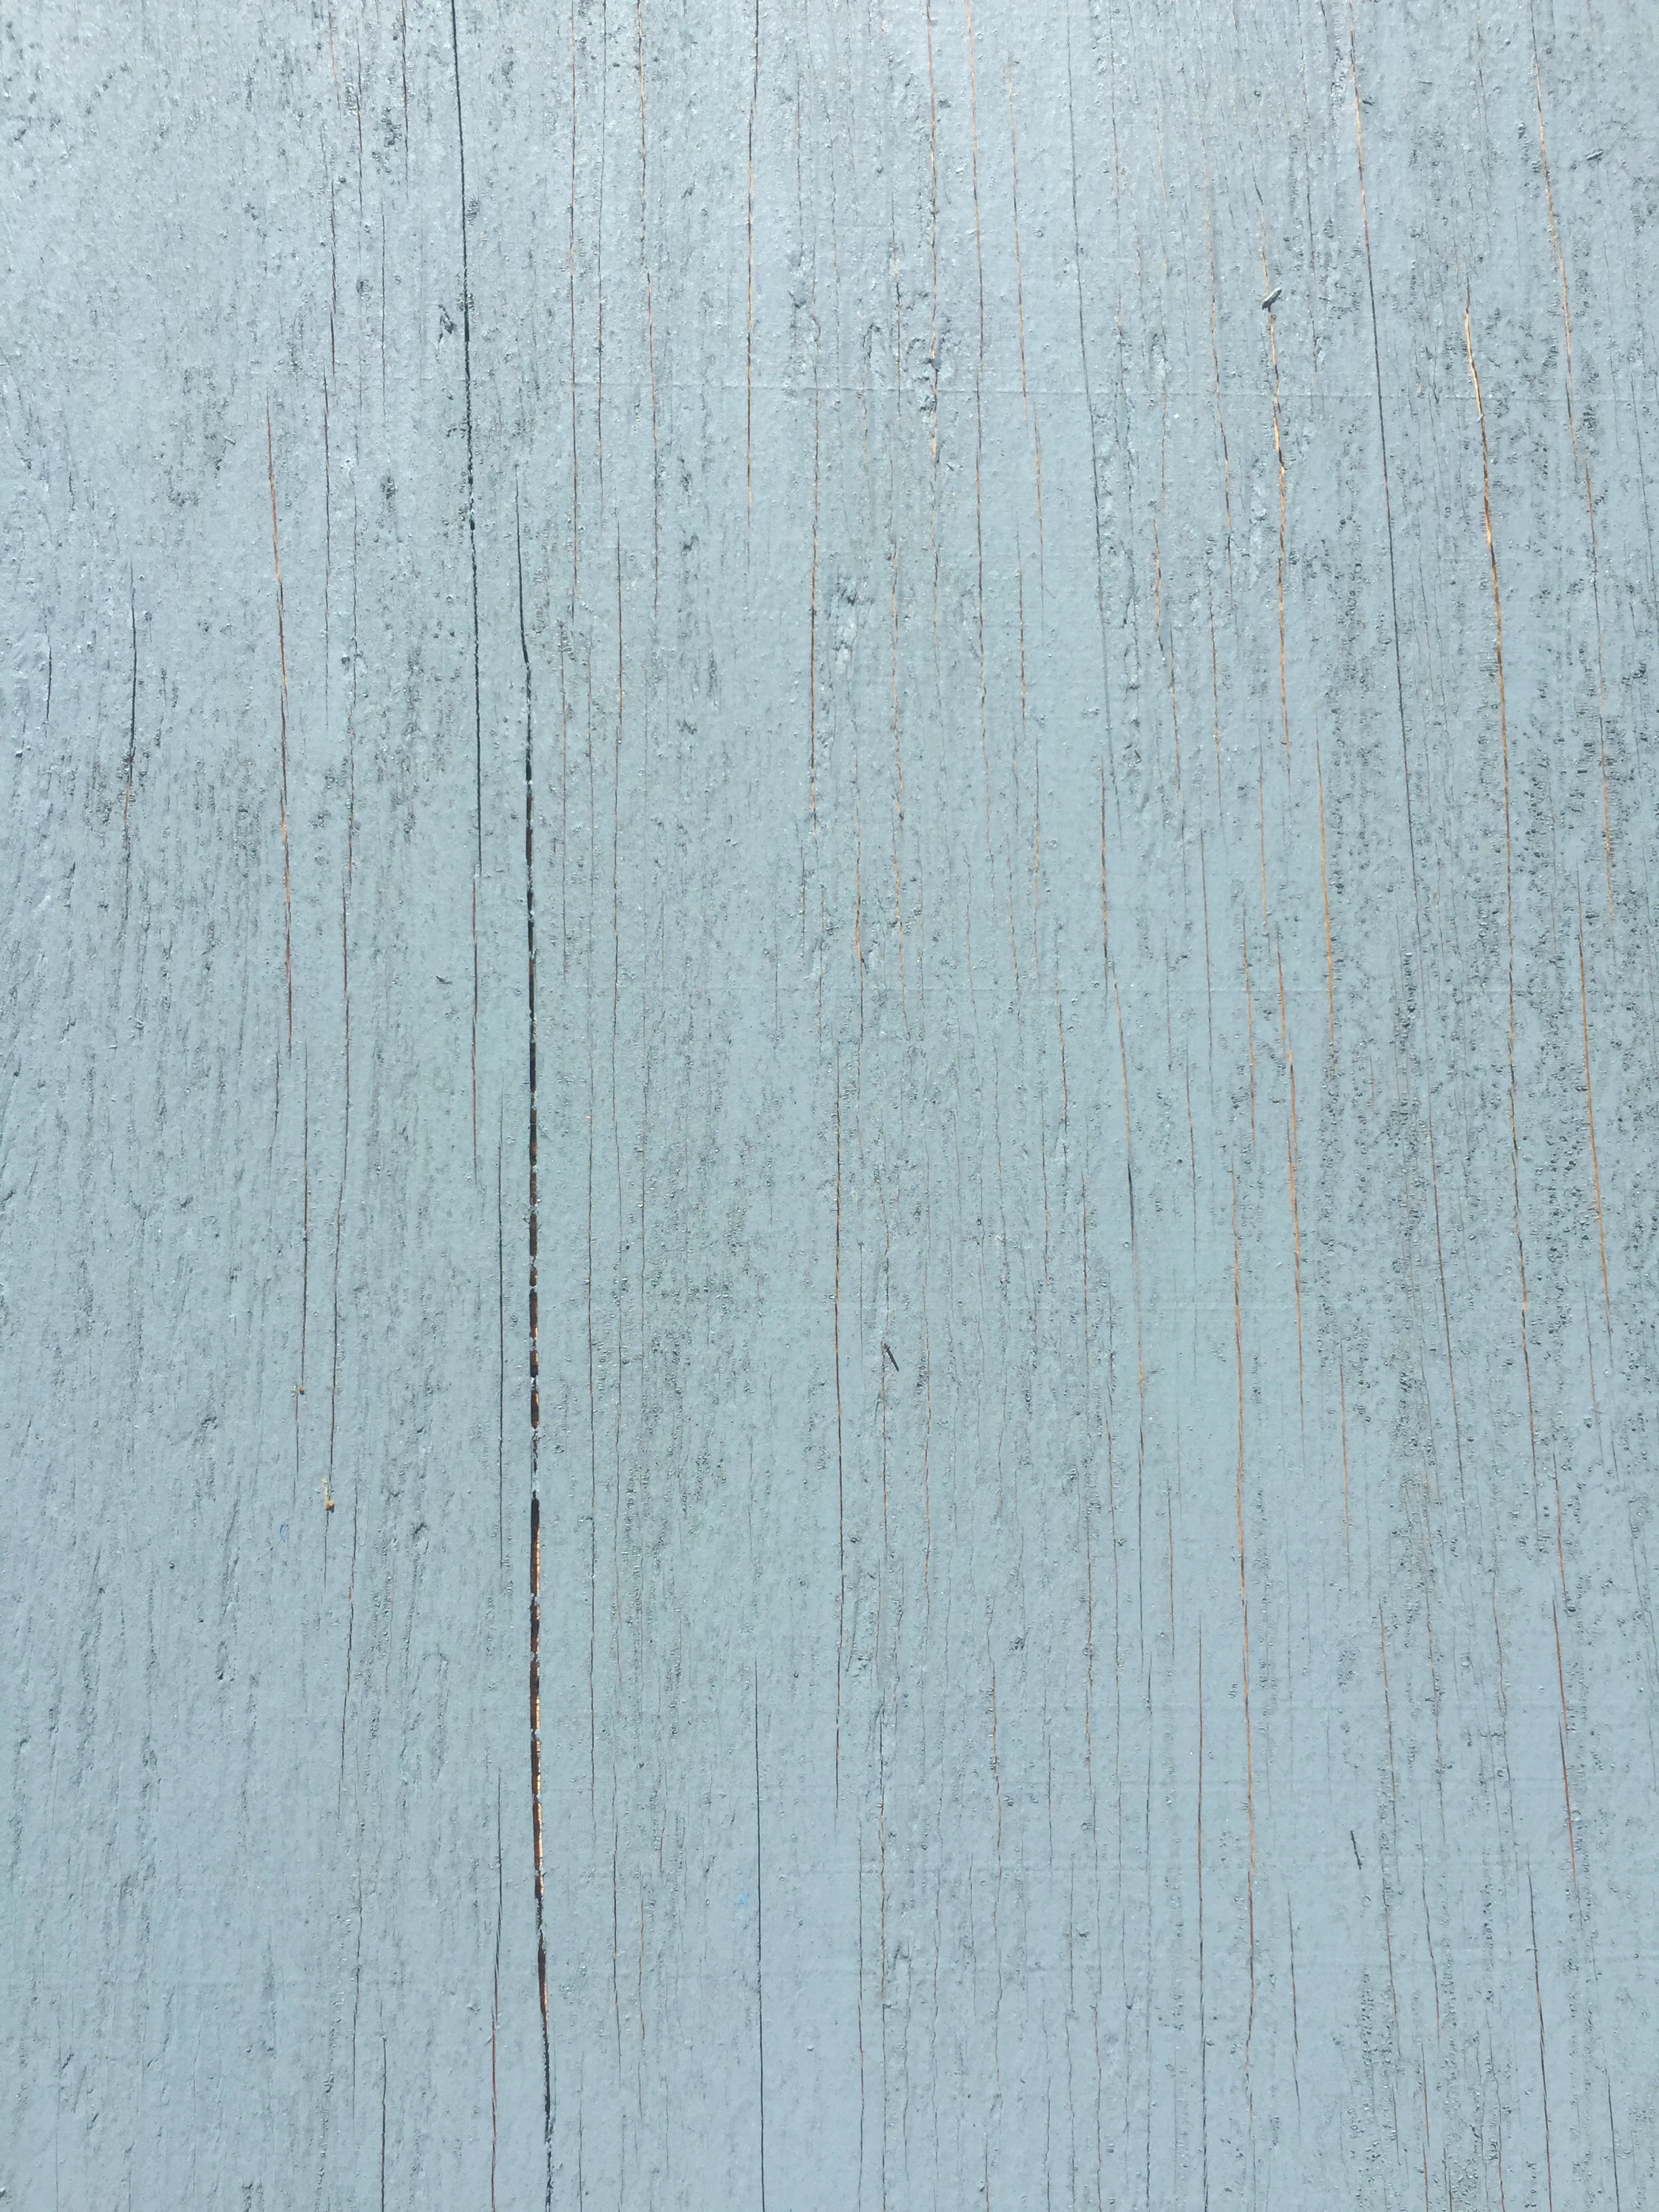 light blue wood texture